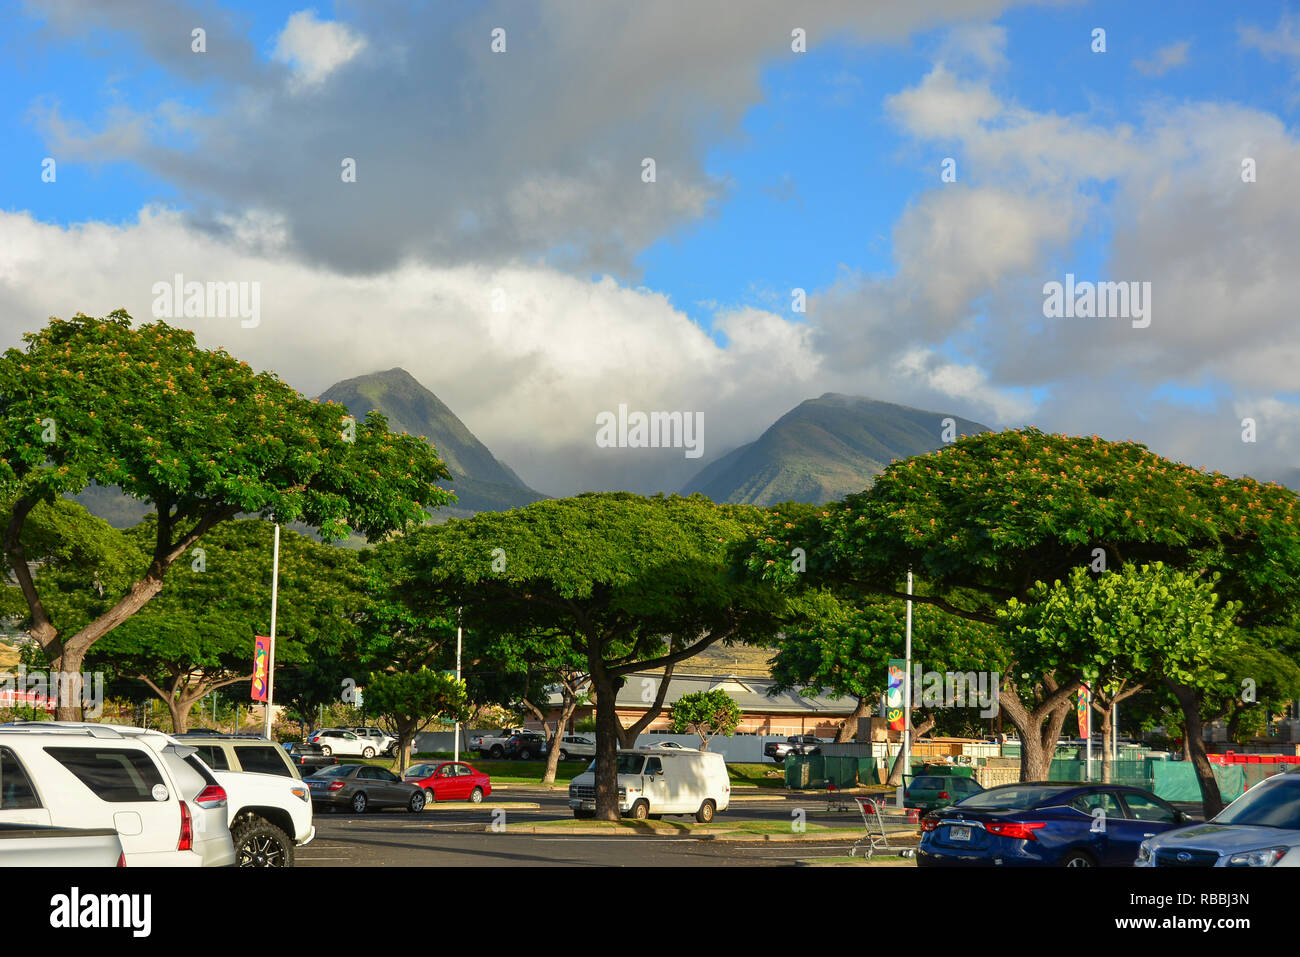 Histórico de Lahaina, Maui, primera capital de las islas hawaianas y antigua aldea ballenera. Foto de stock